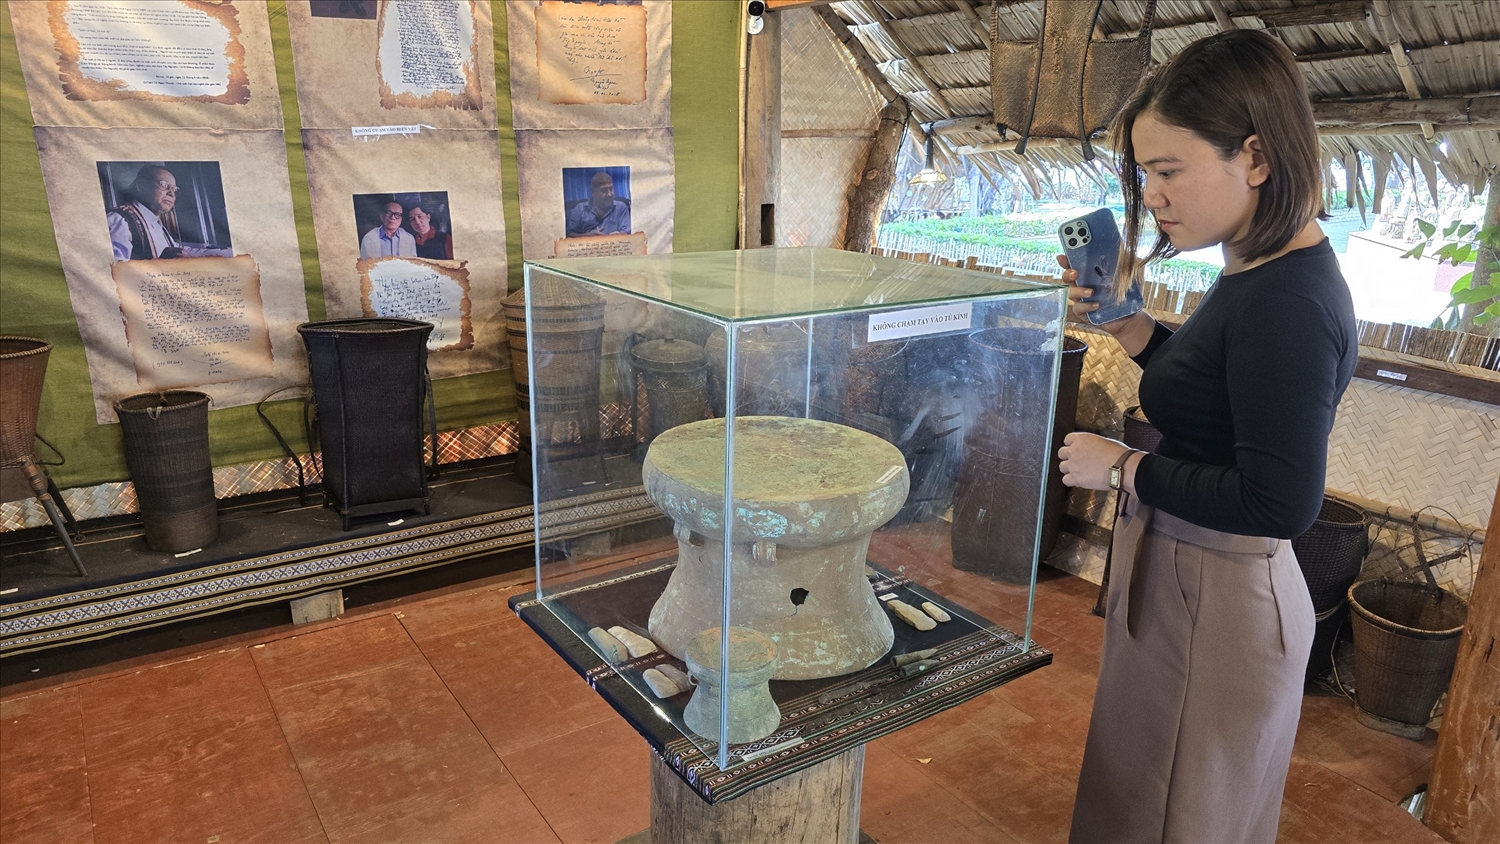 Hiện vật trống đồng đang được trưng bày tại khu vực nhà dài Ê Đê trong khu vực quảng trường Đại Đoàn Kết, TP. Pleiku, tỉnh Gia Lai